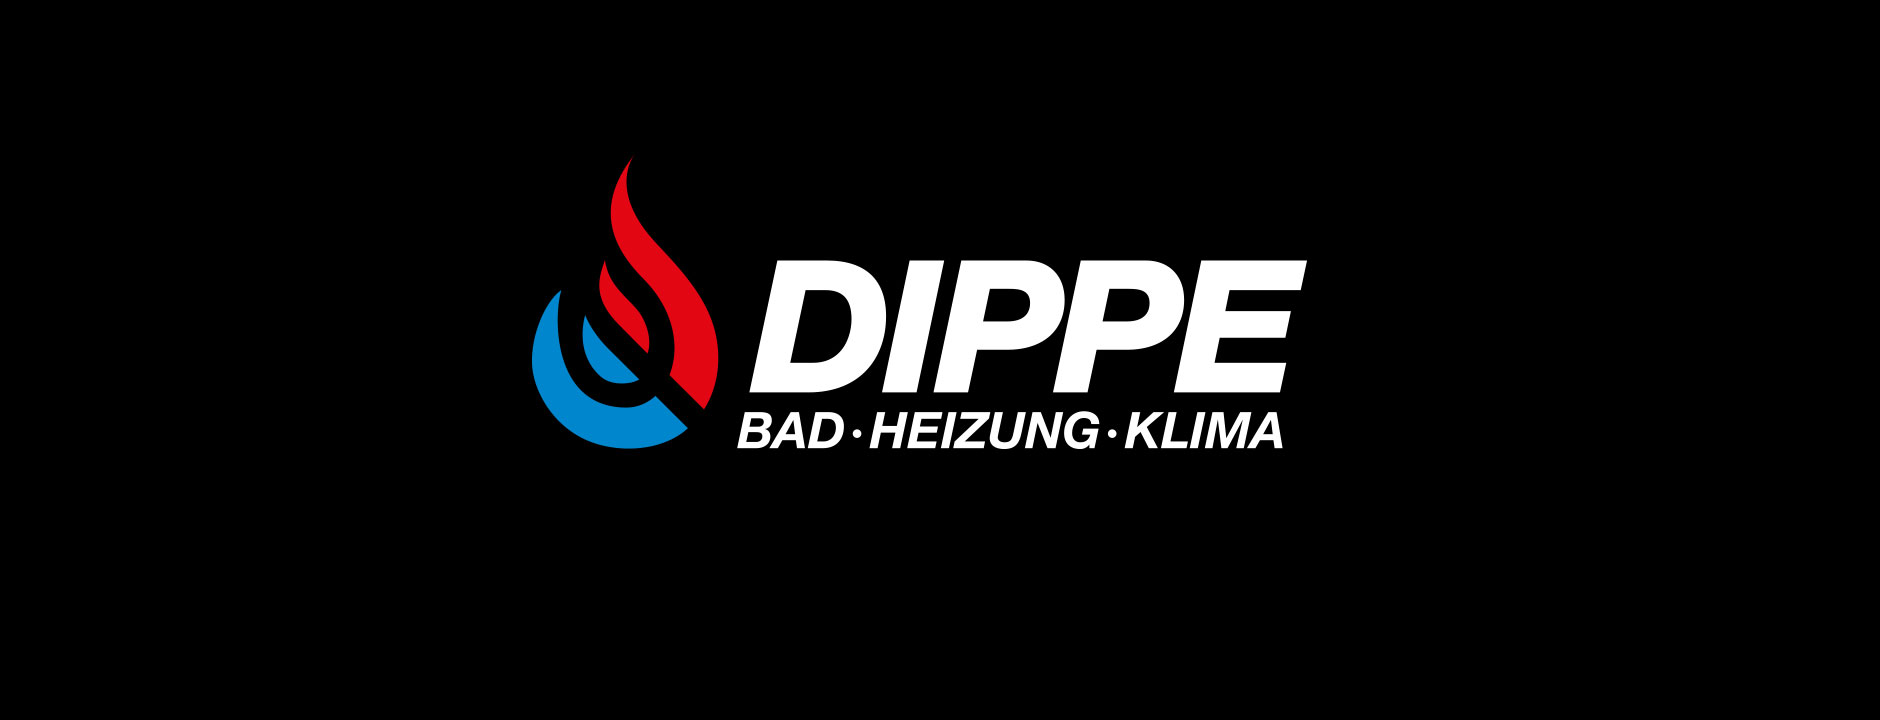 Dippe - Design